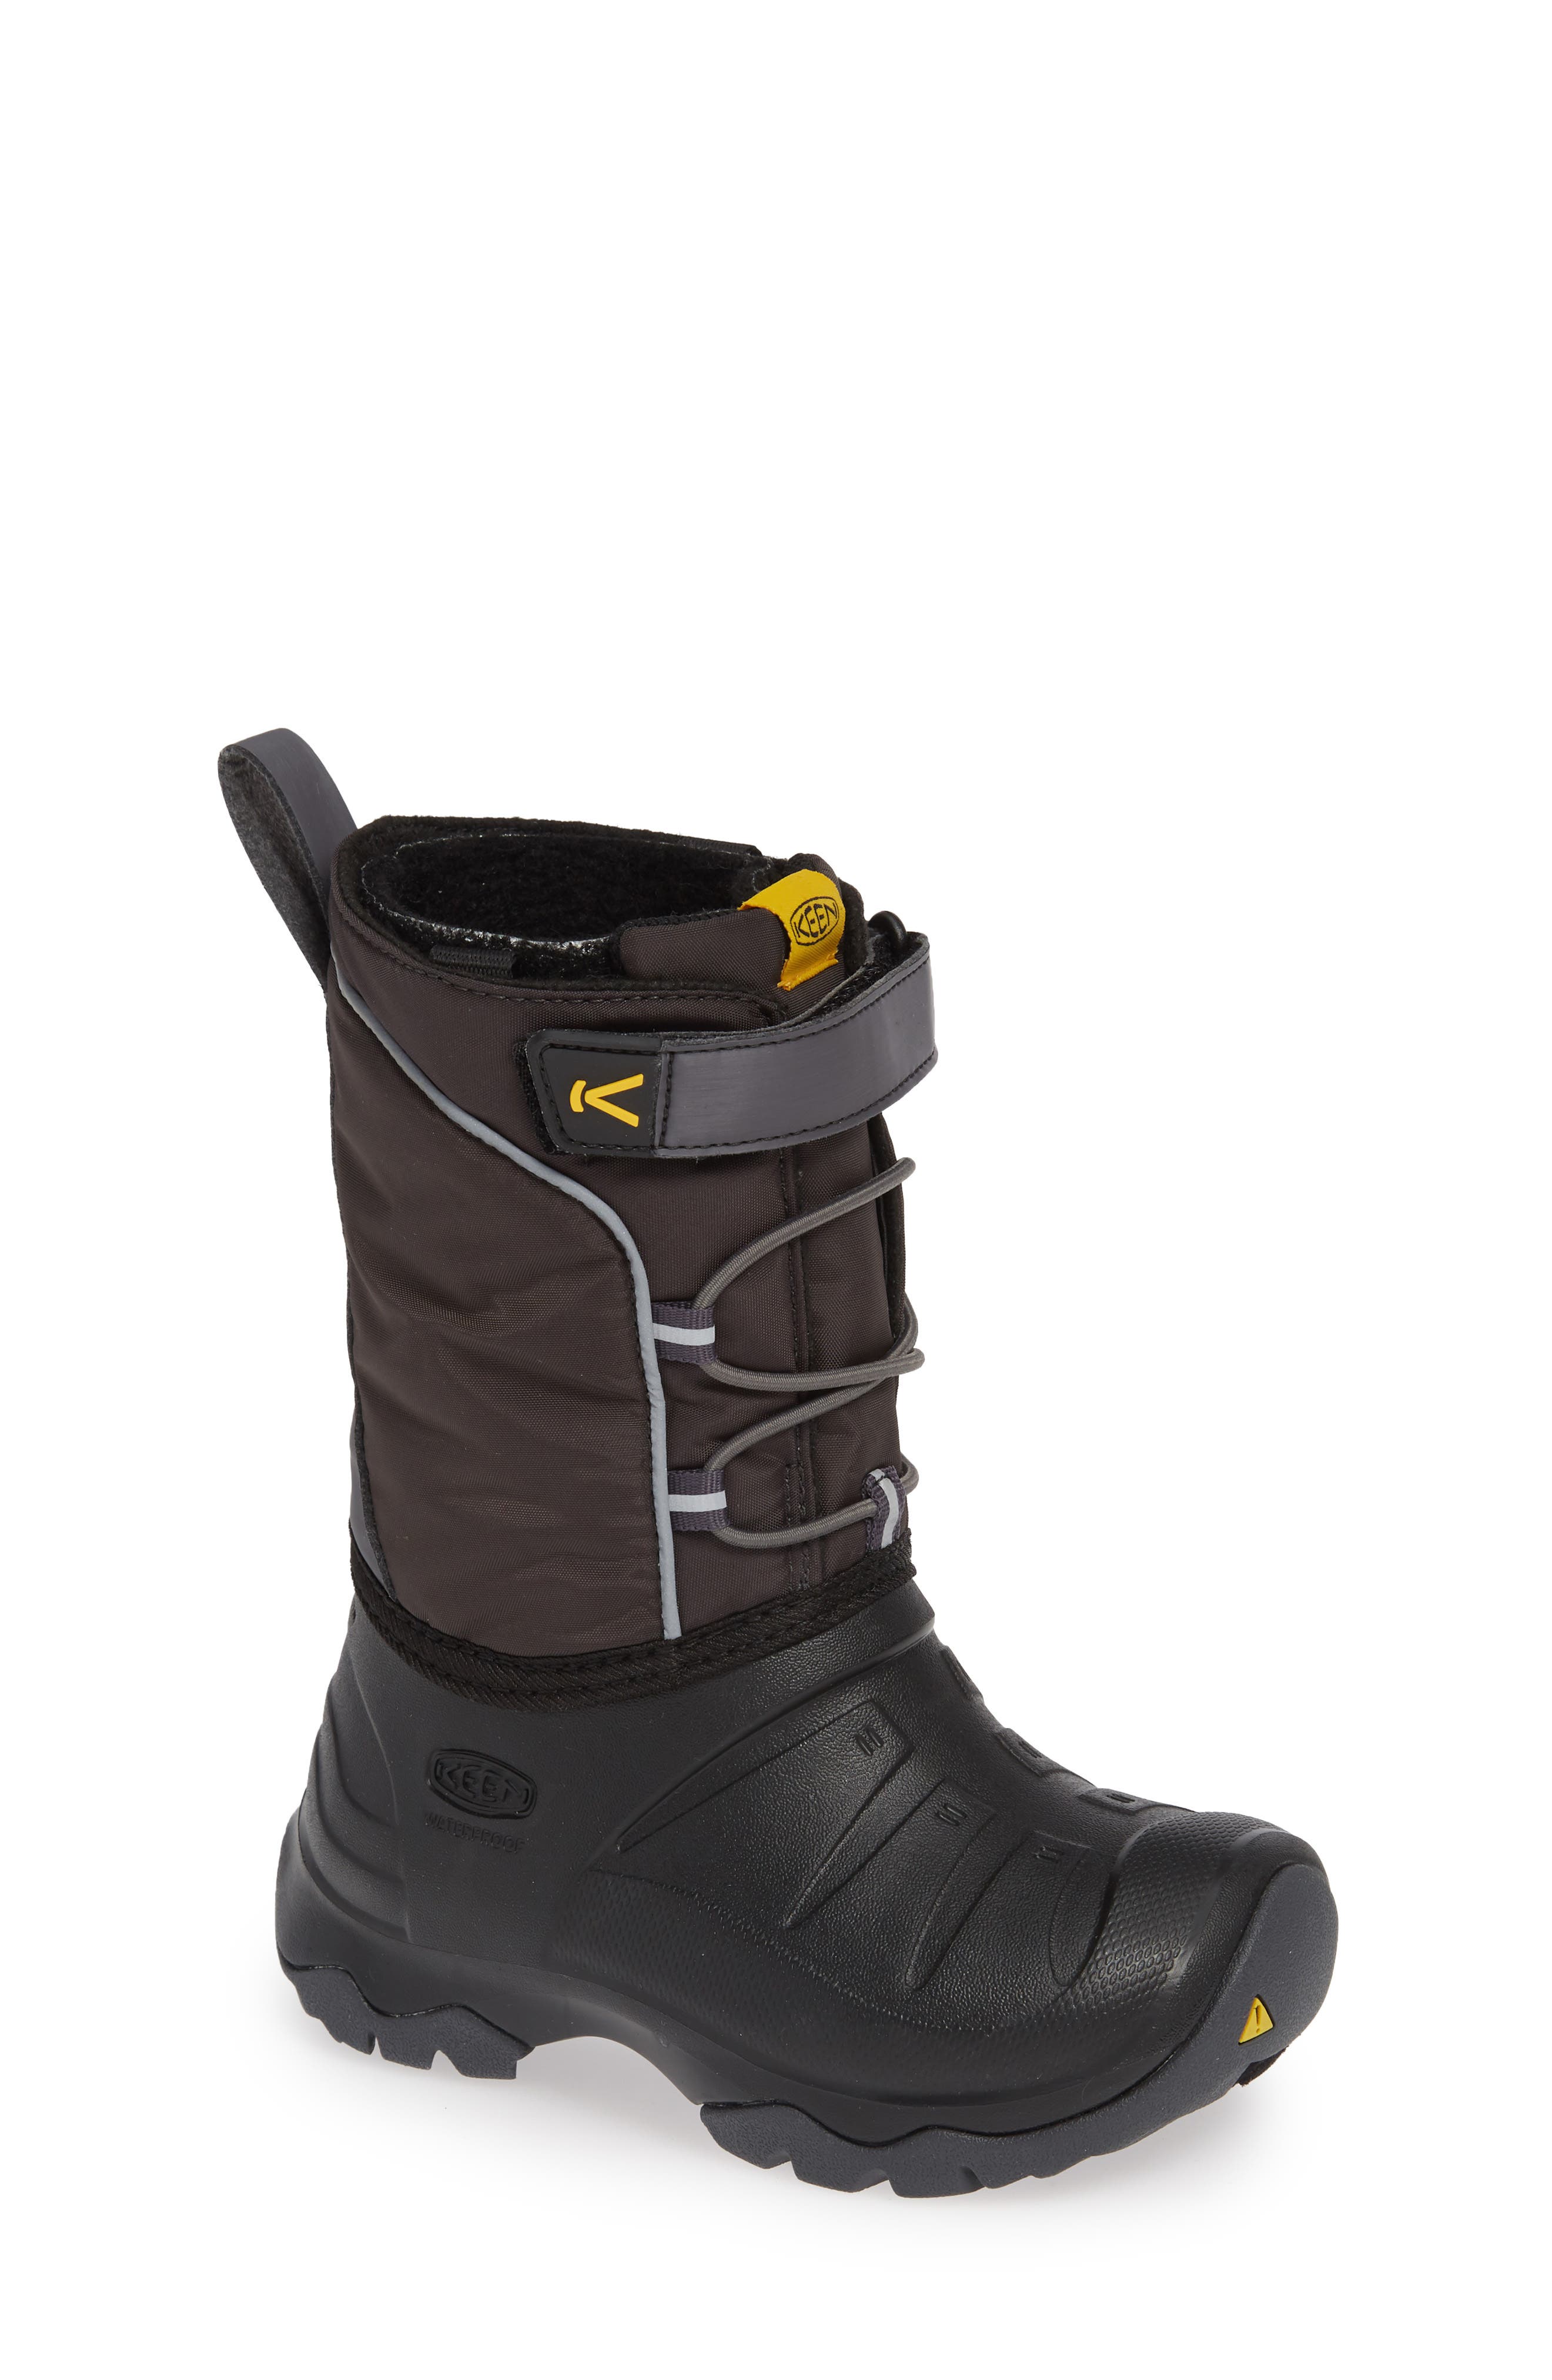 nordstrom rack waterproof boots